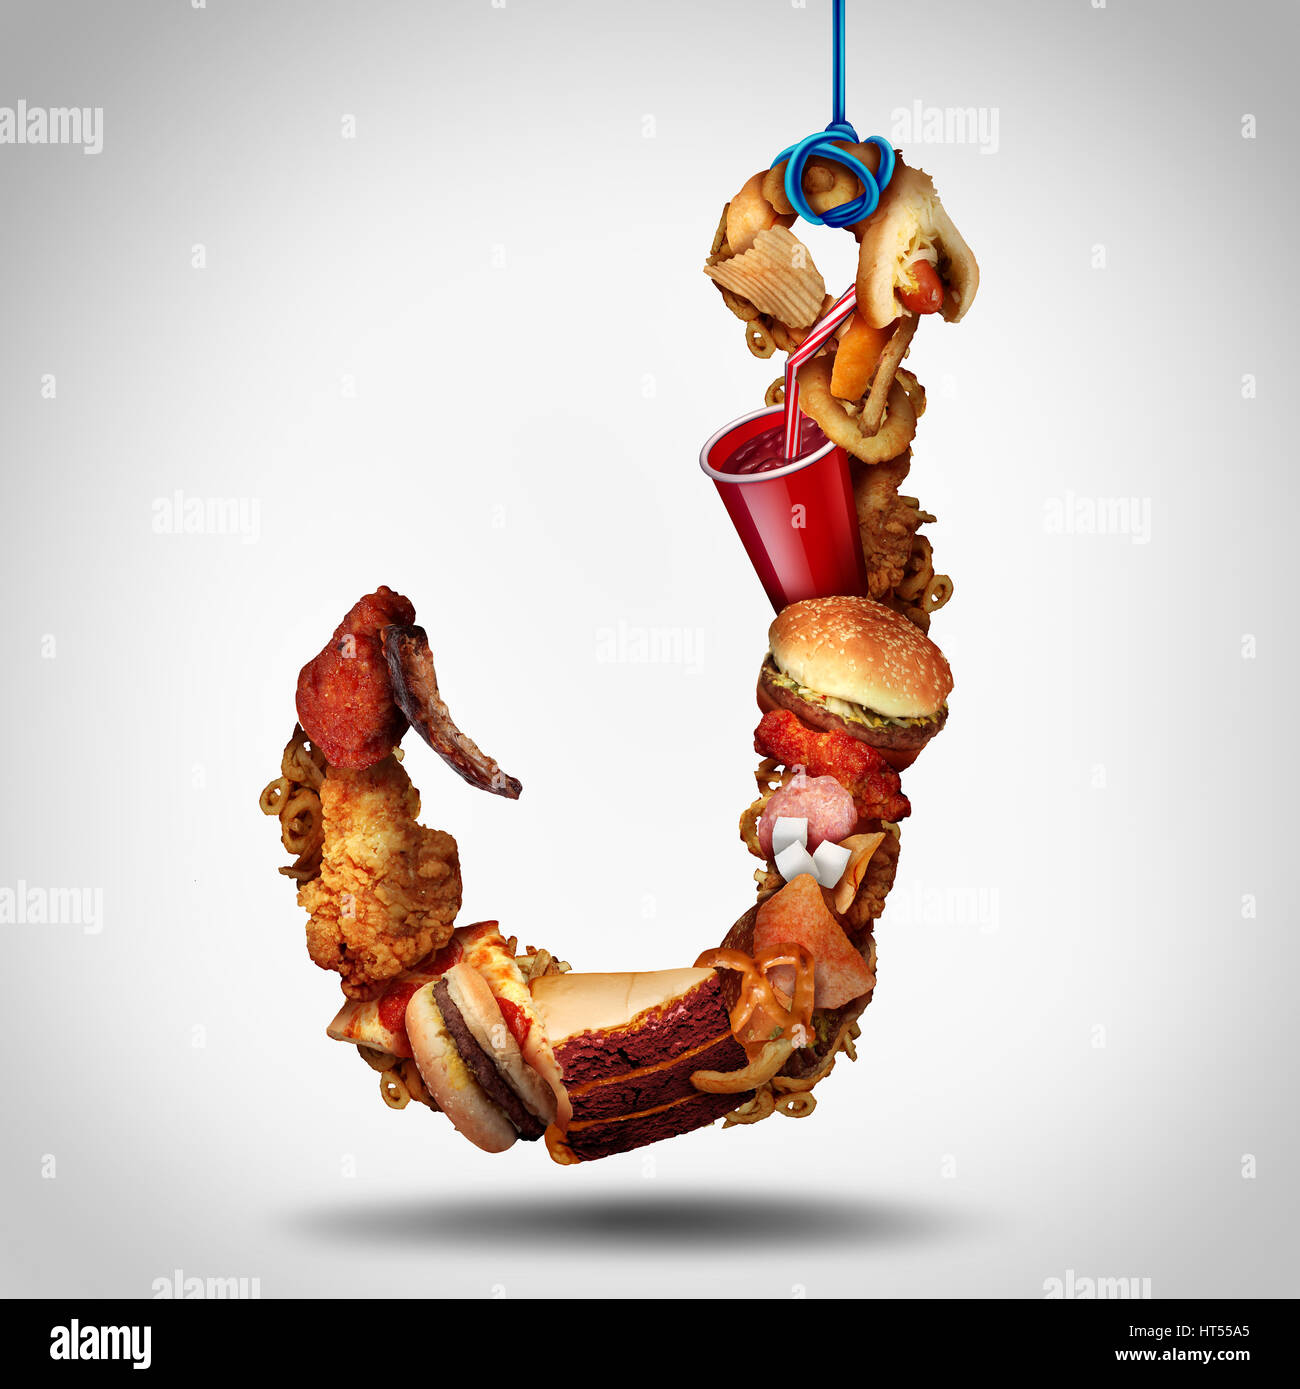 Süchtig nach Fett Konzept als Fast-Food oder hochkalorische Snackd als verlockende Köder als Essen Psychologie Konzept mit 3D Illustyration Elementen geprägt. Stockfoto